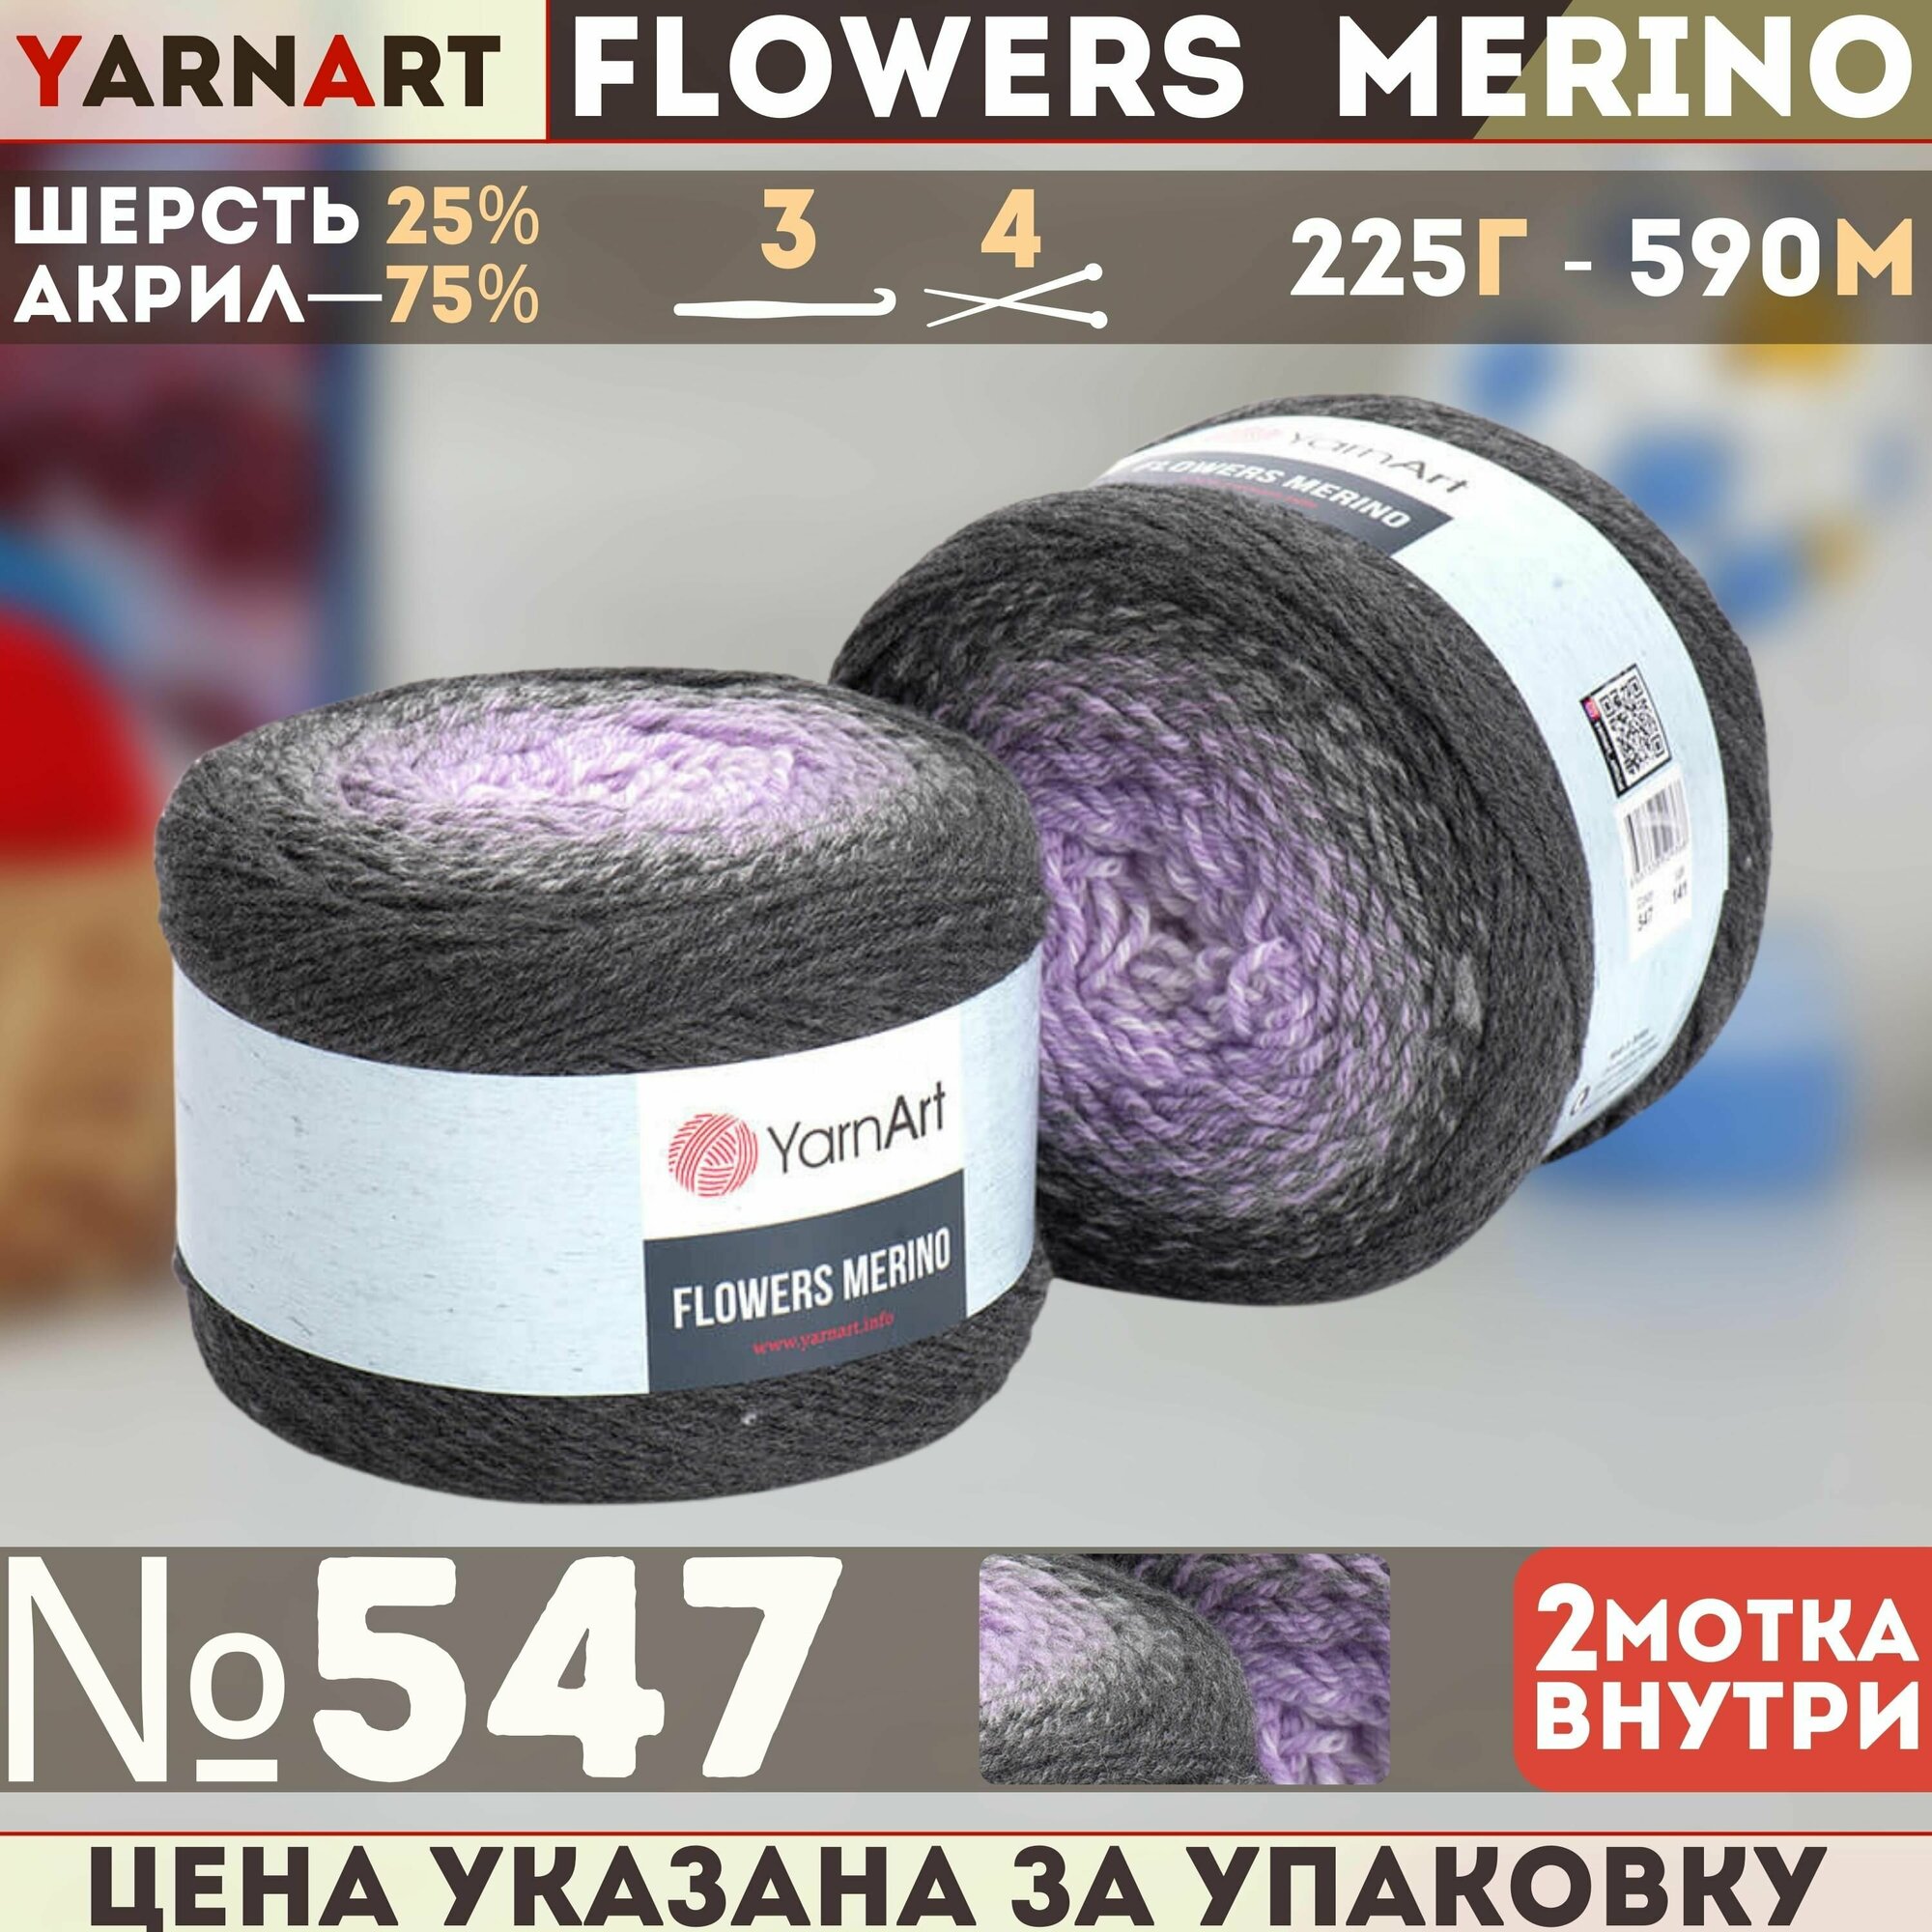 Пряжа Flowers Merino (YarnArt), т. сер/сер/сирен - 547, 25% шерсть, 75% акрил, 2 мотка, 225 г, 590 м.